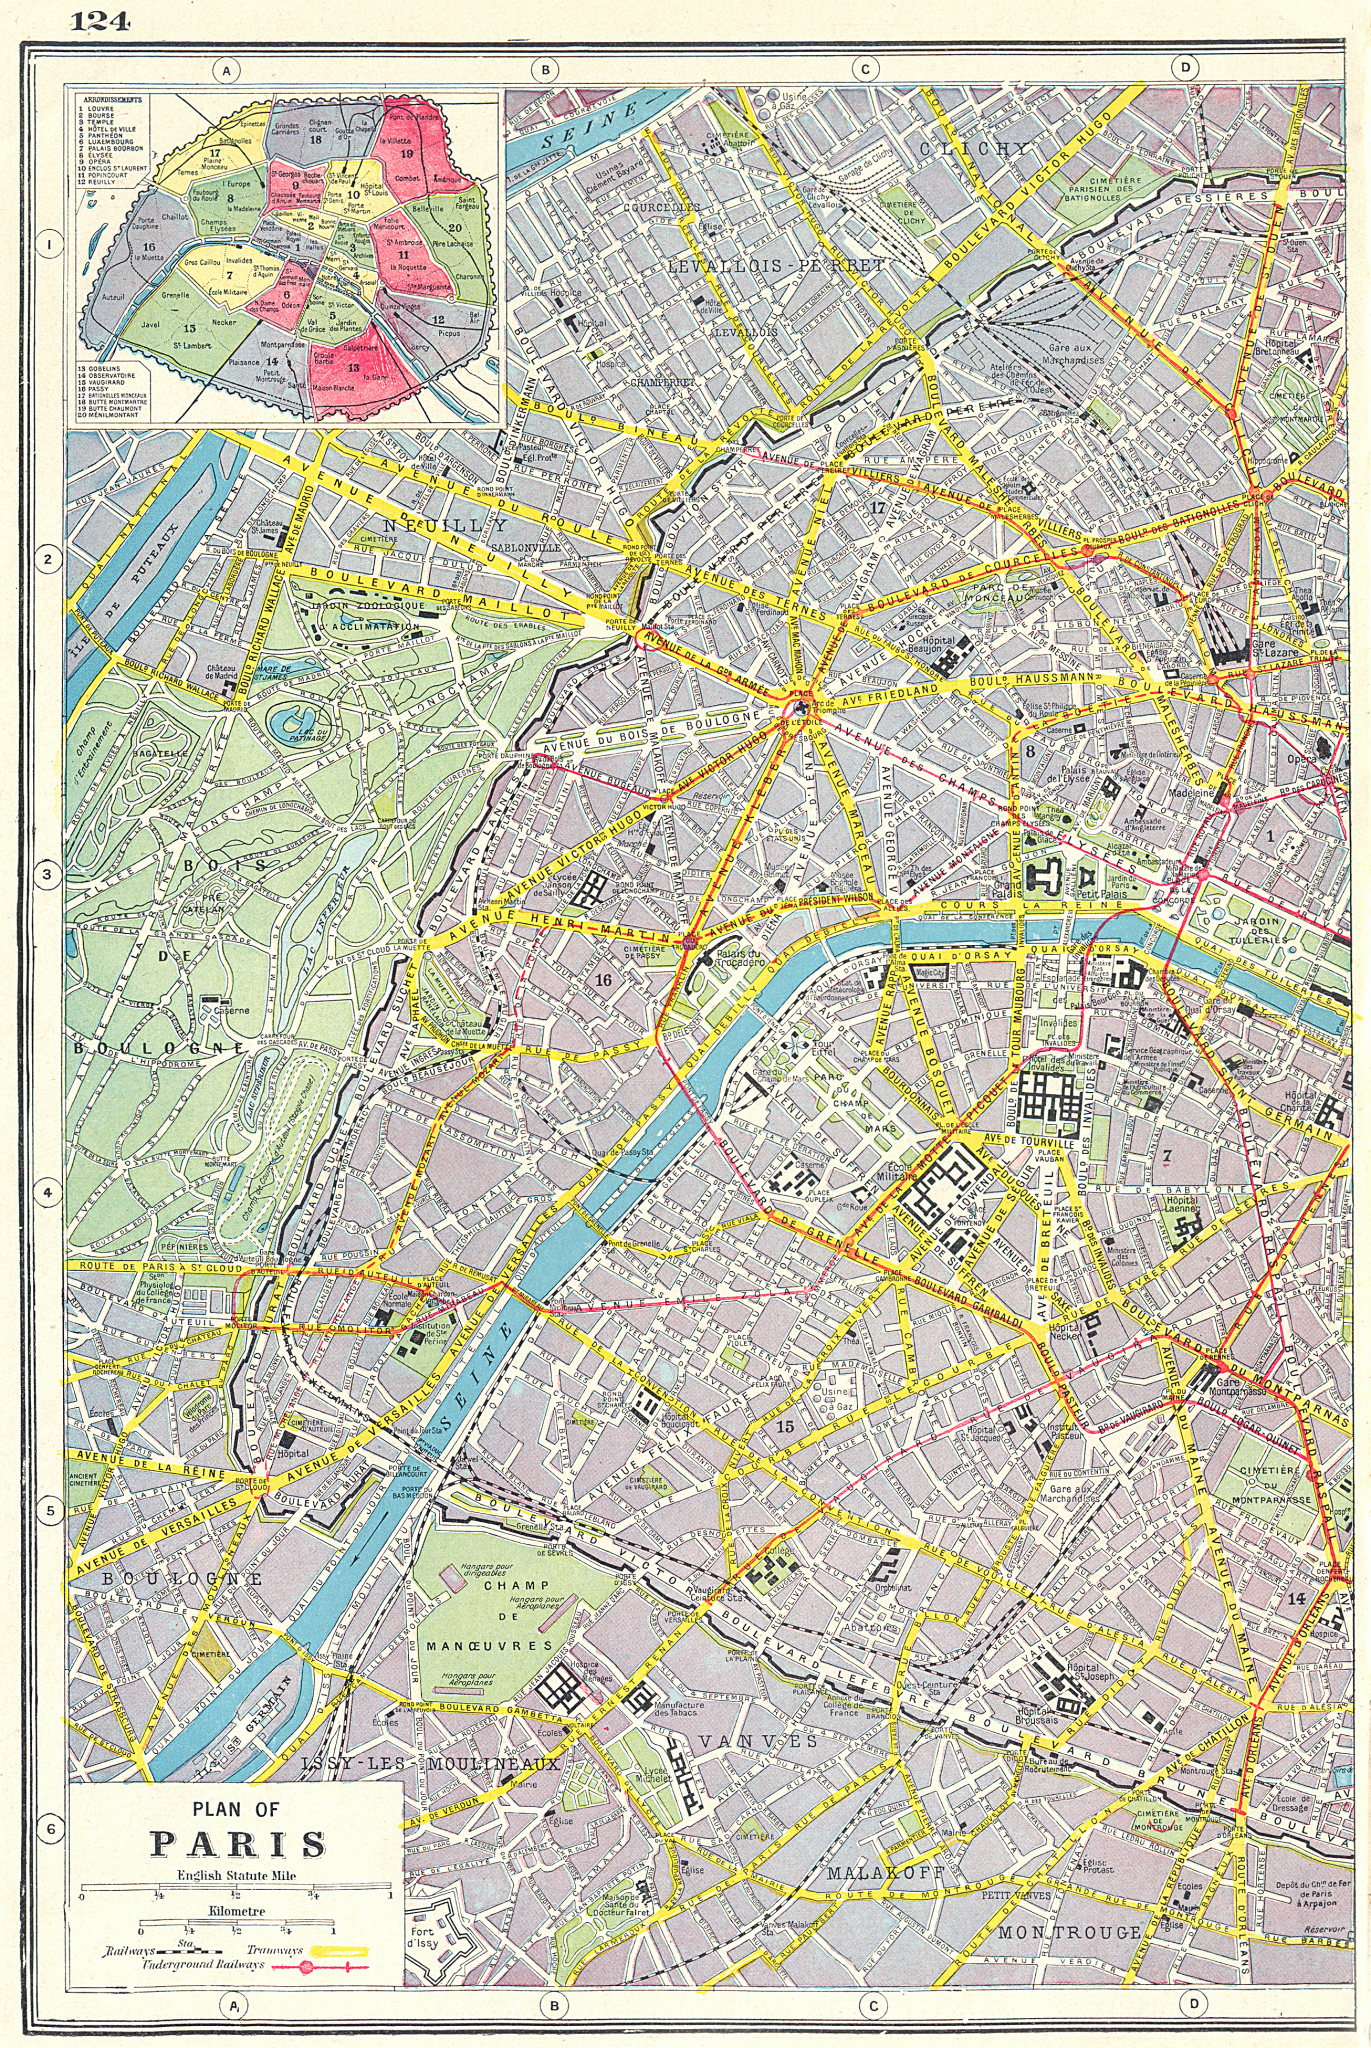 Associate Product PARIS WEST. Plan of Paris west sheet; inset Arrondissements 1920 old map